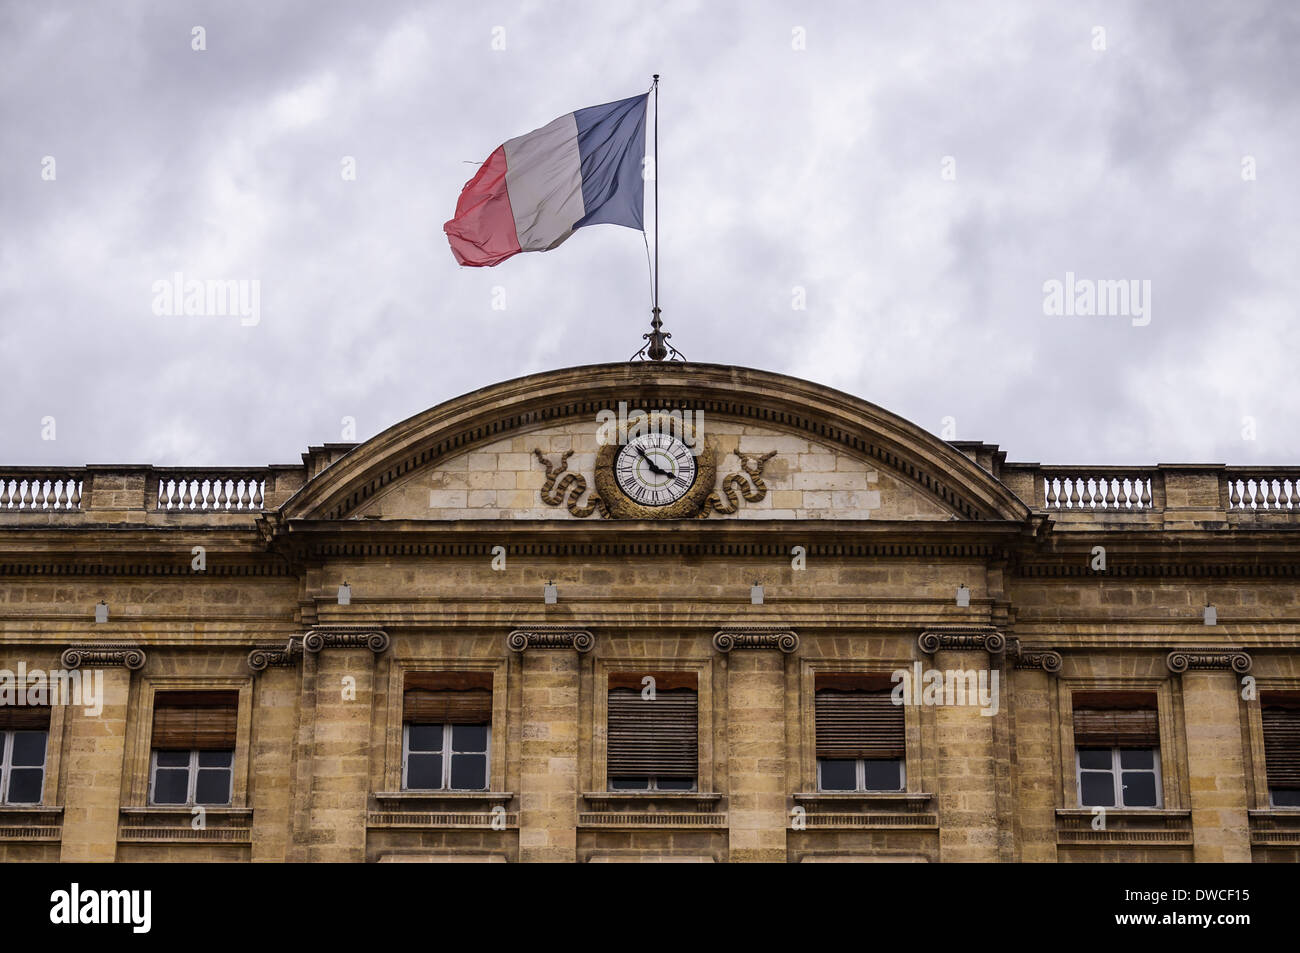 Bordeaux - Hotel de Ville (City Hall). France Stock Photo